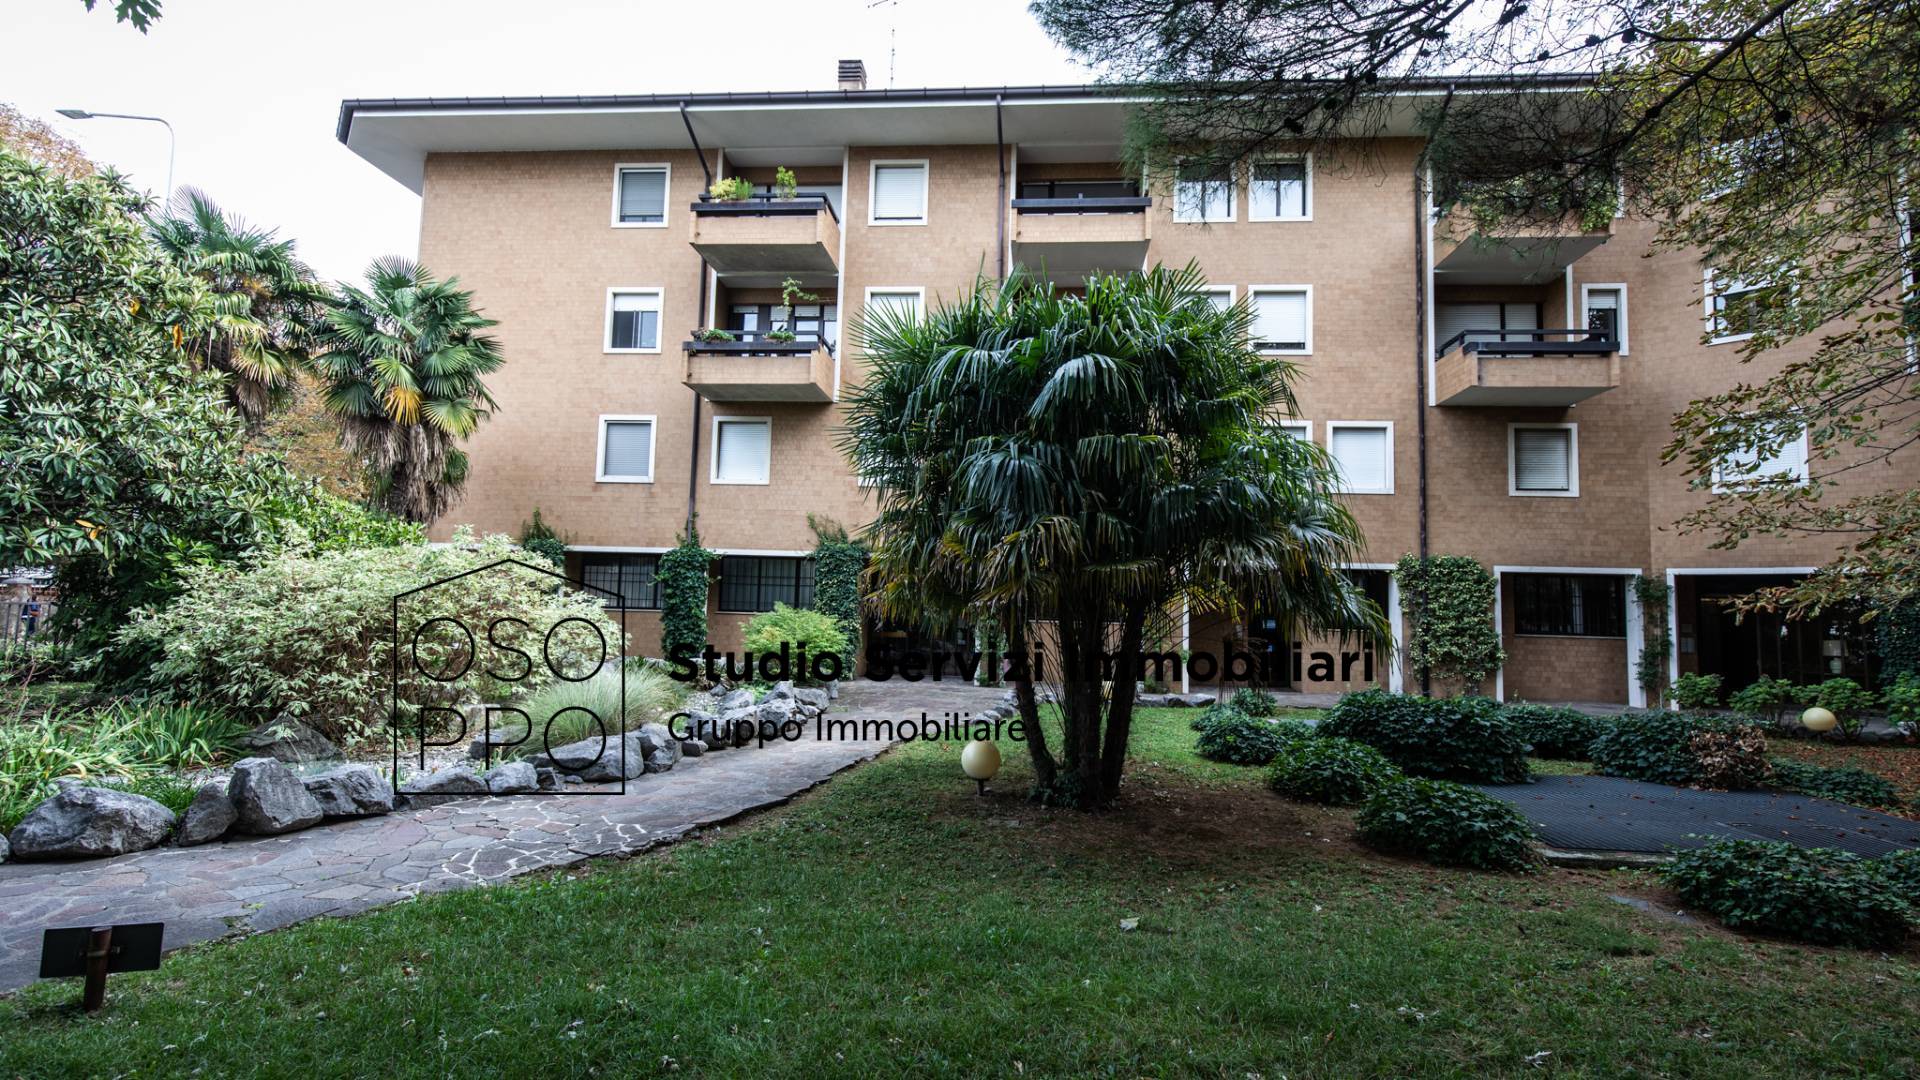 Appartamento in affitto a Udine, 2 locali, zona Località: Centrostorico, Trattative riservate | CambioCasa.it